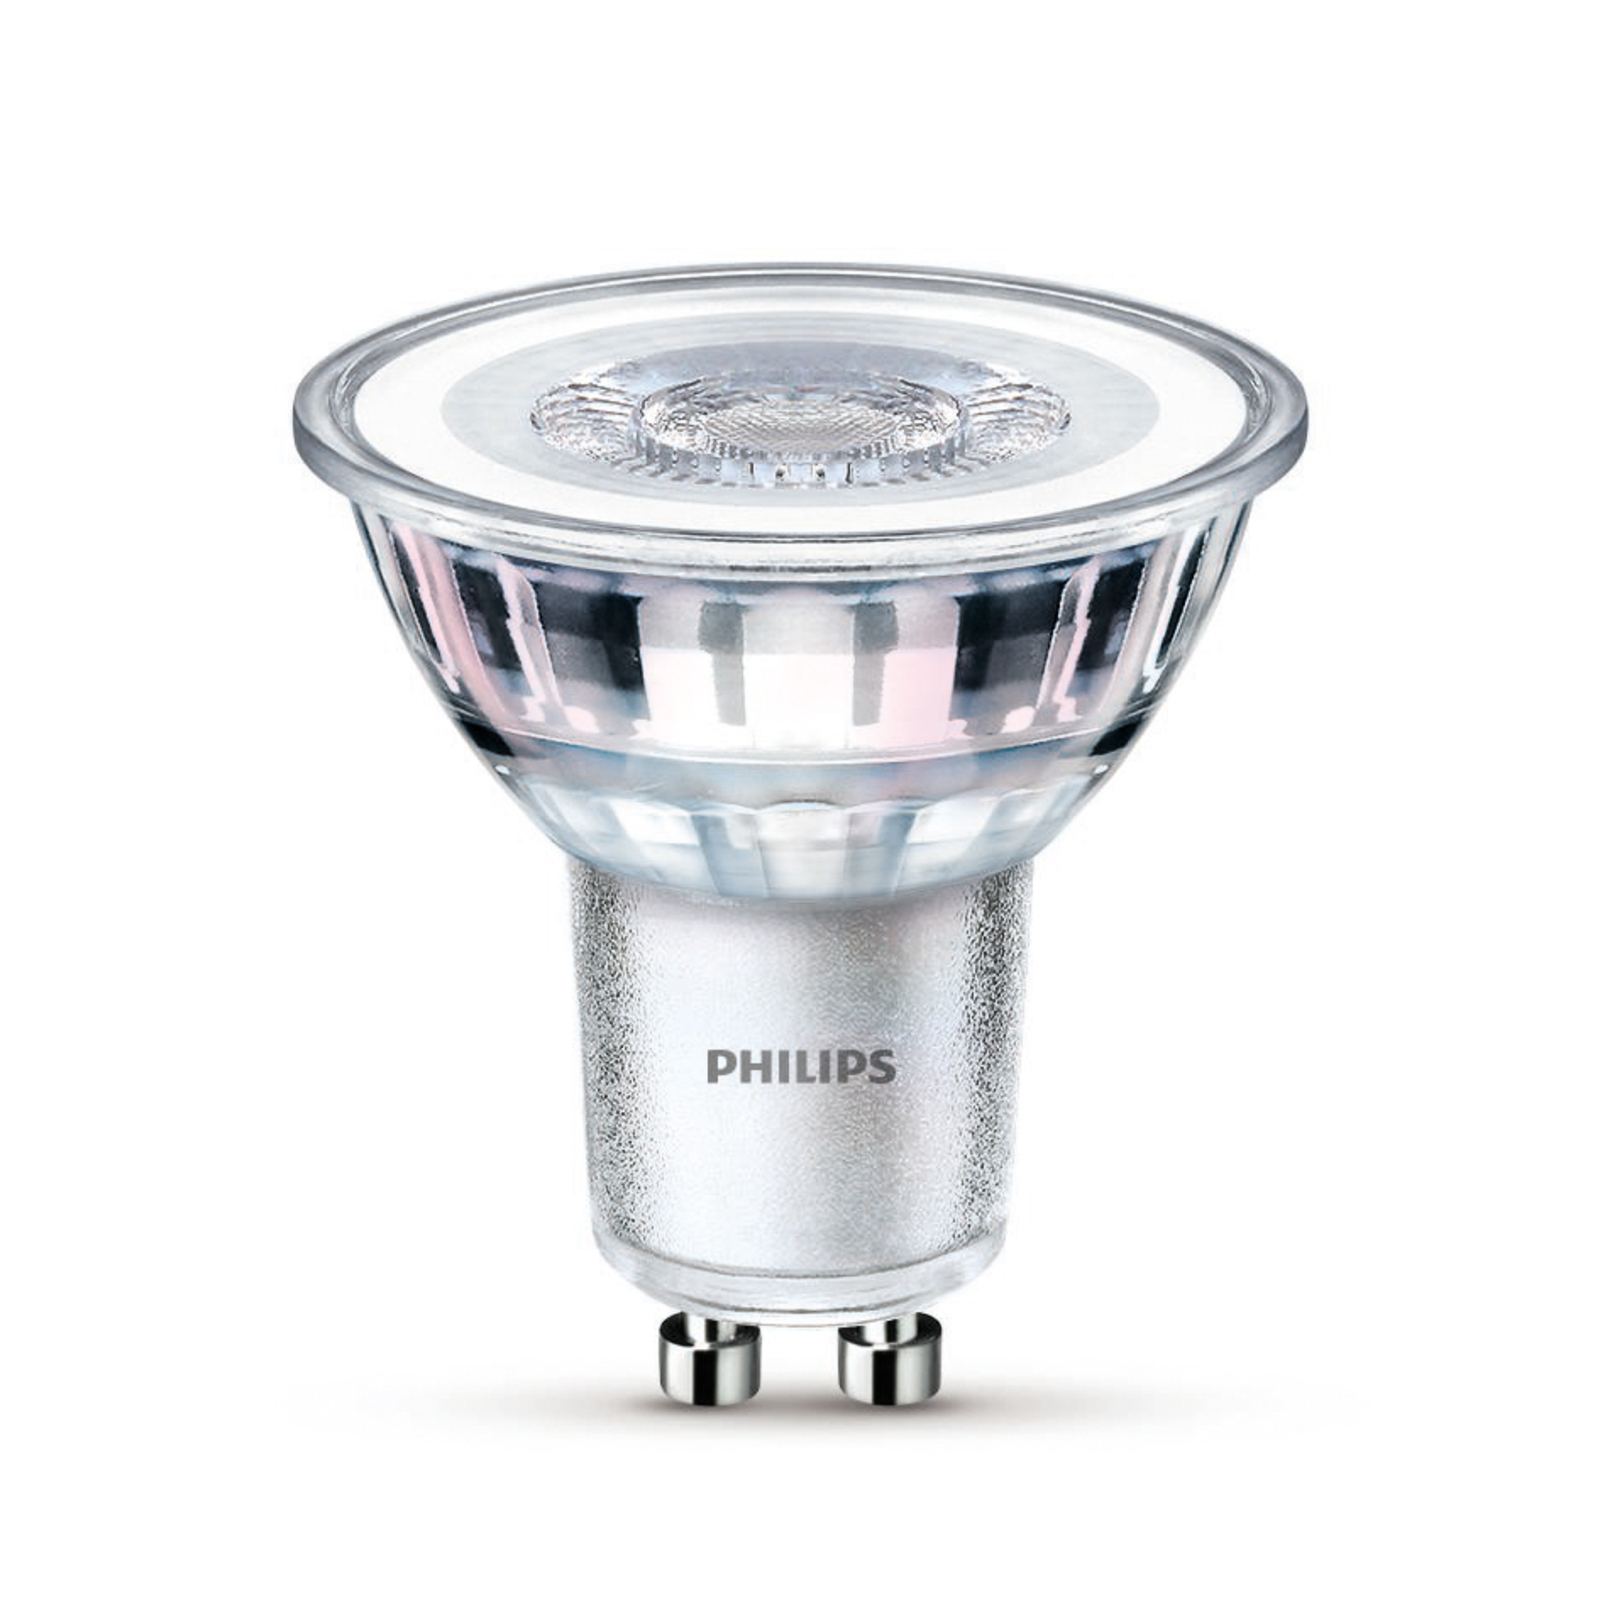 Philips LED-Lampe GU10 3,5W 275lm 840 klar 36° 6er